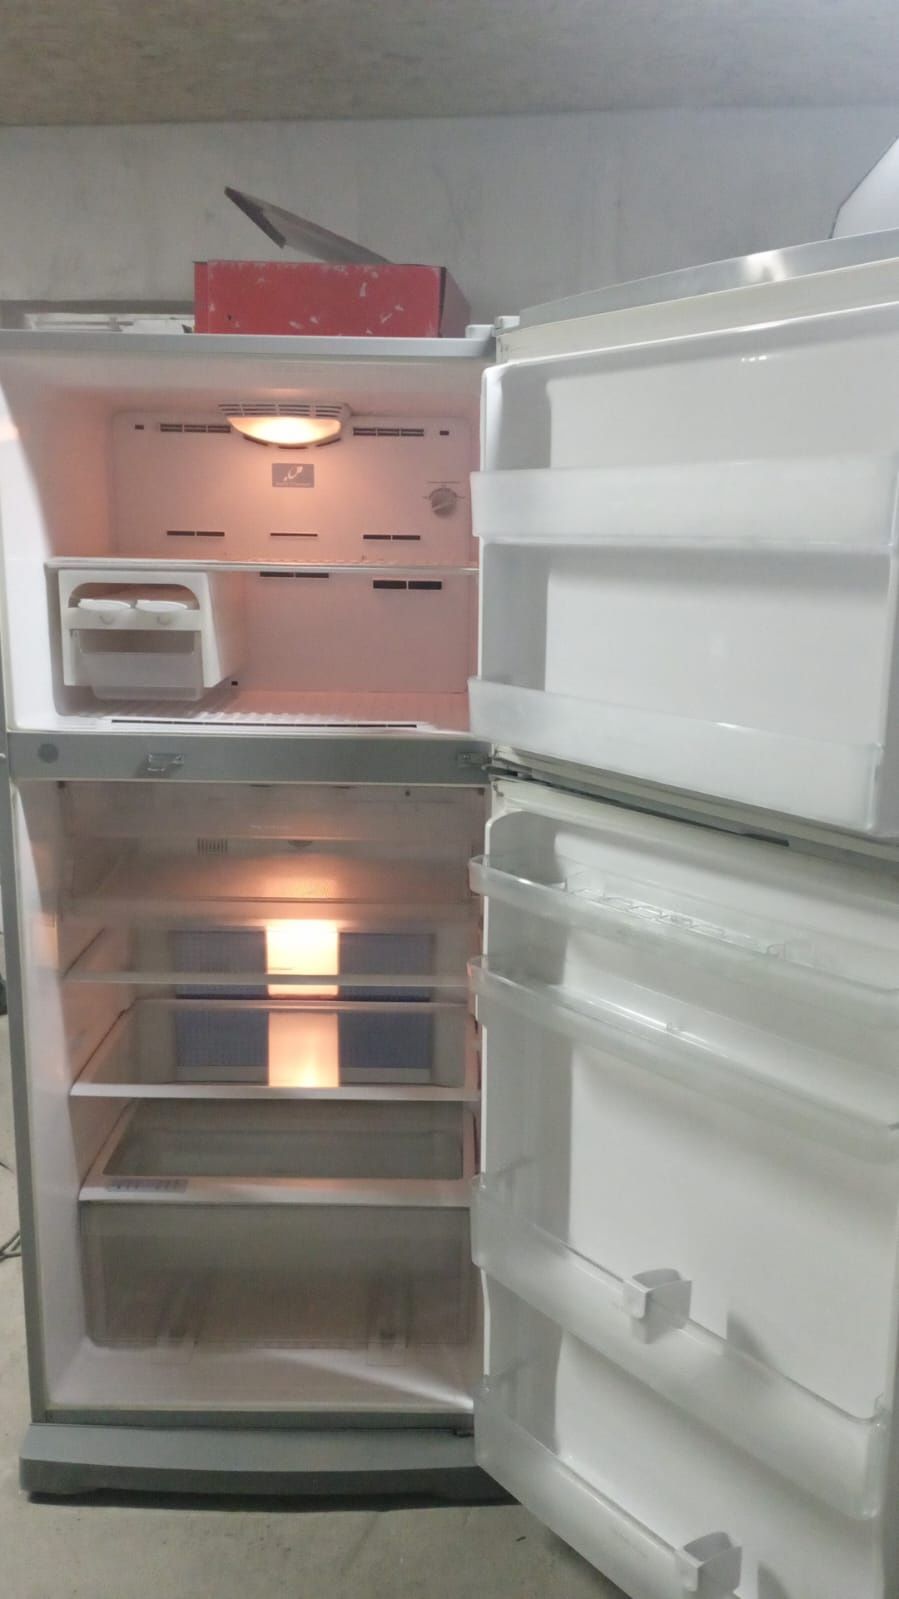 Продам холодильник hitachi